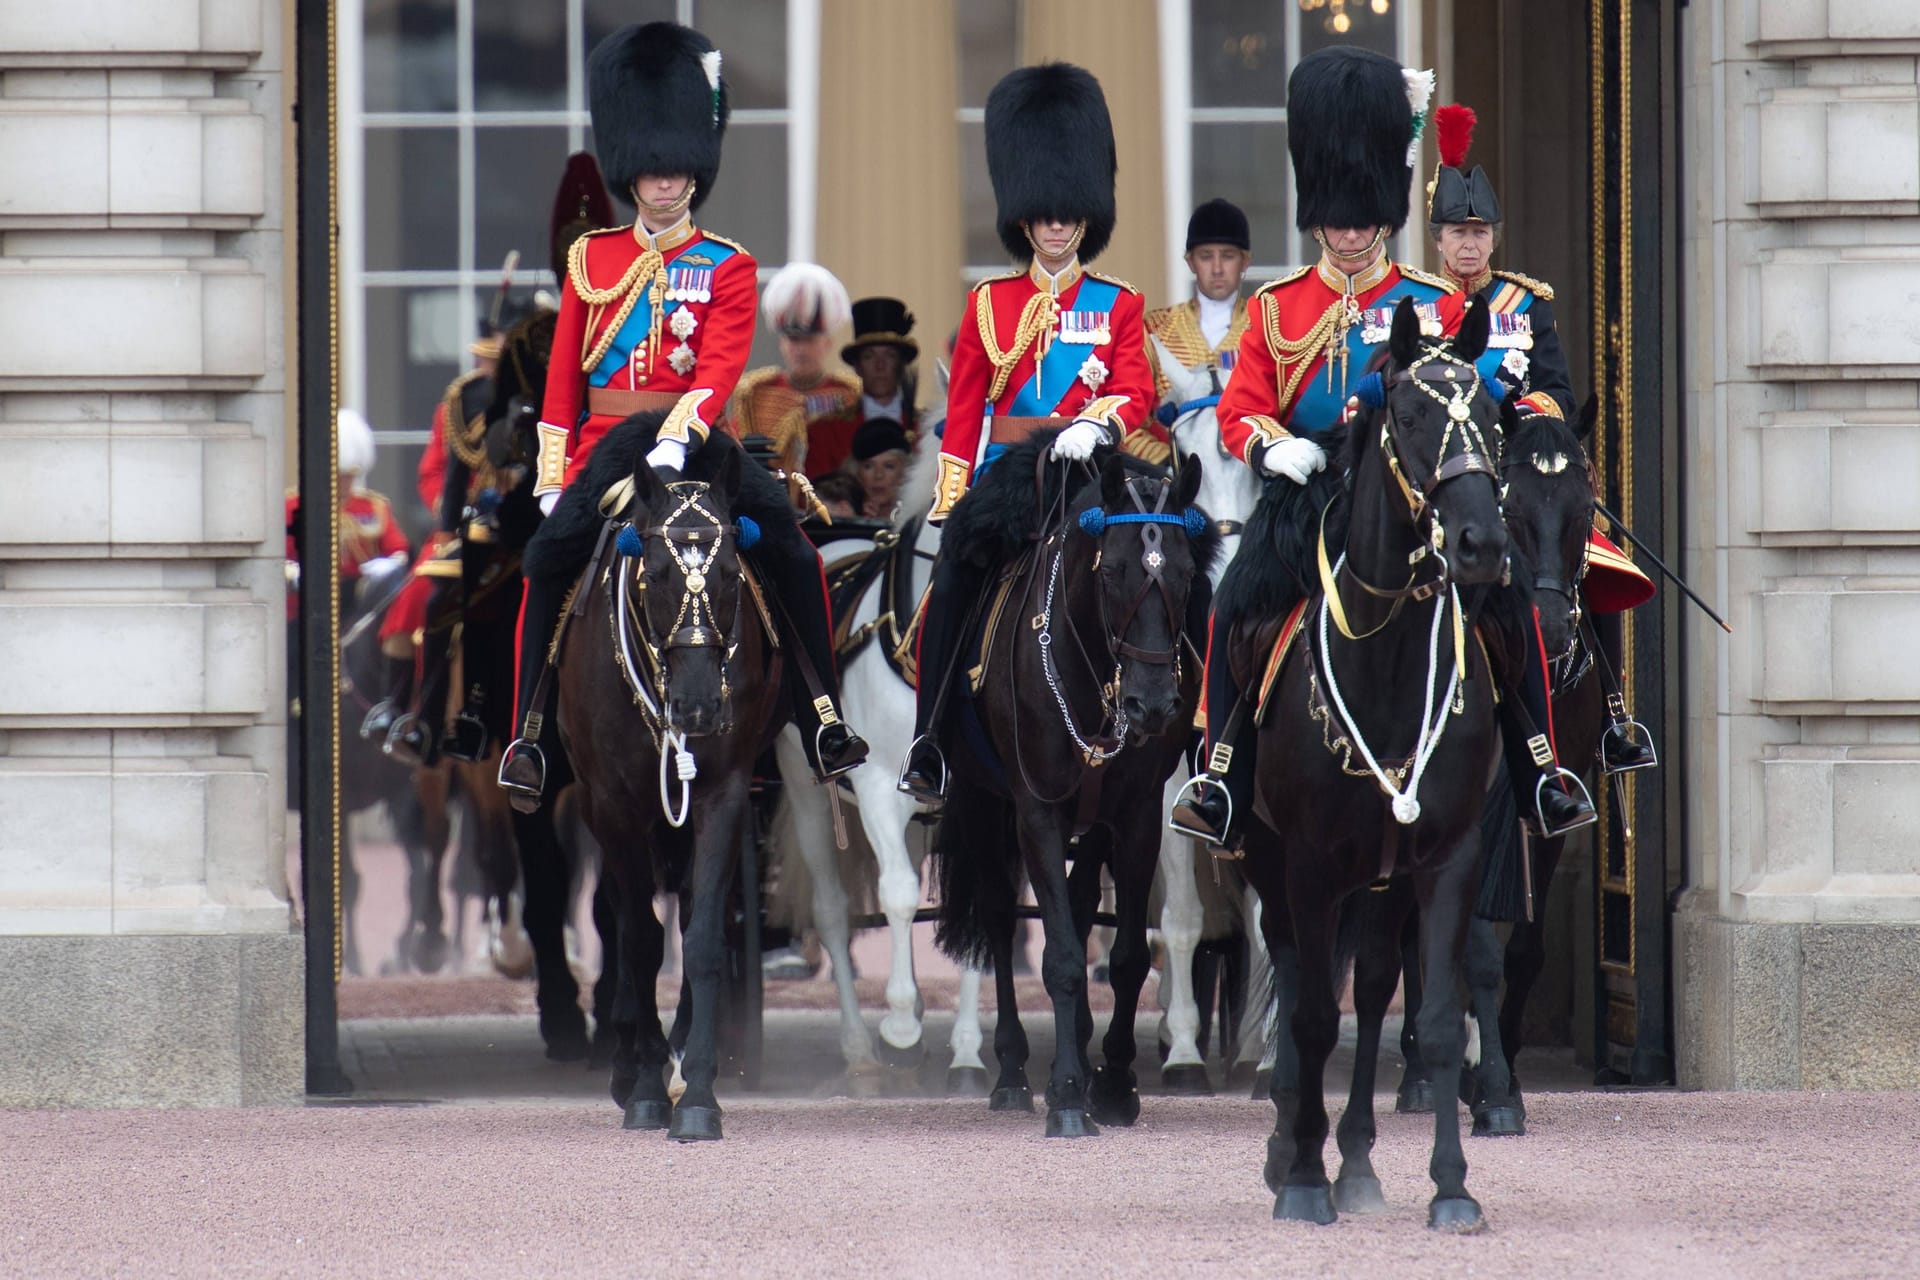 Köing Charles III., gefolgt von Prinz William, Prinz Edward und Prinzessin Anne